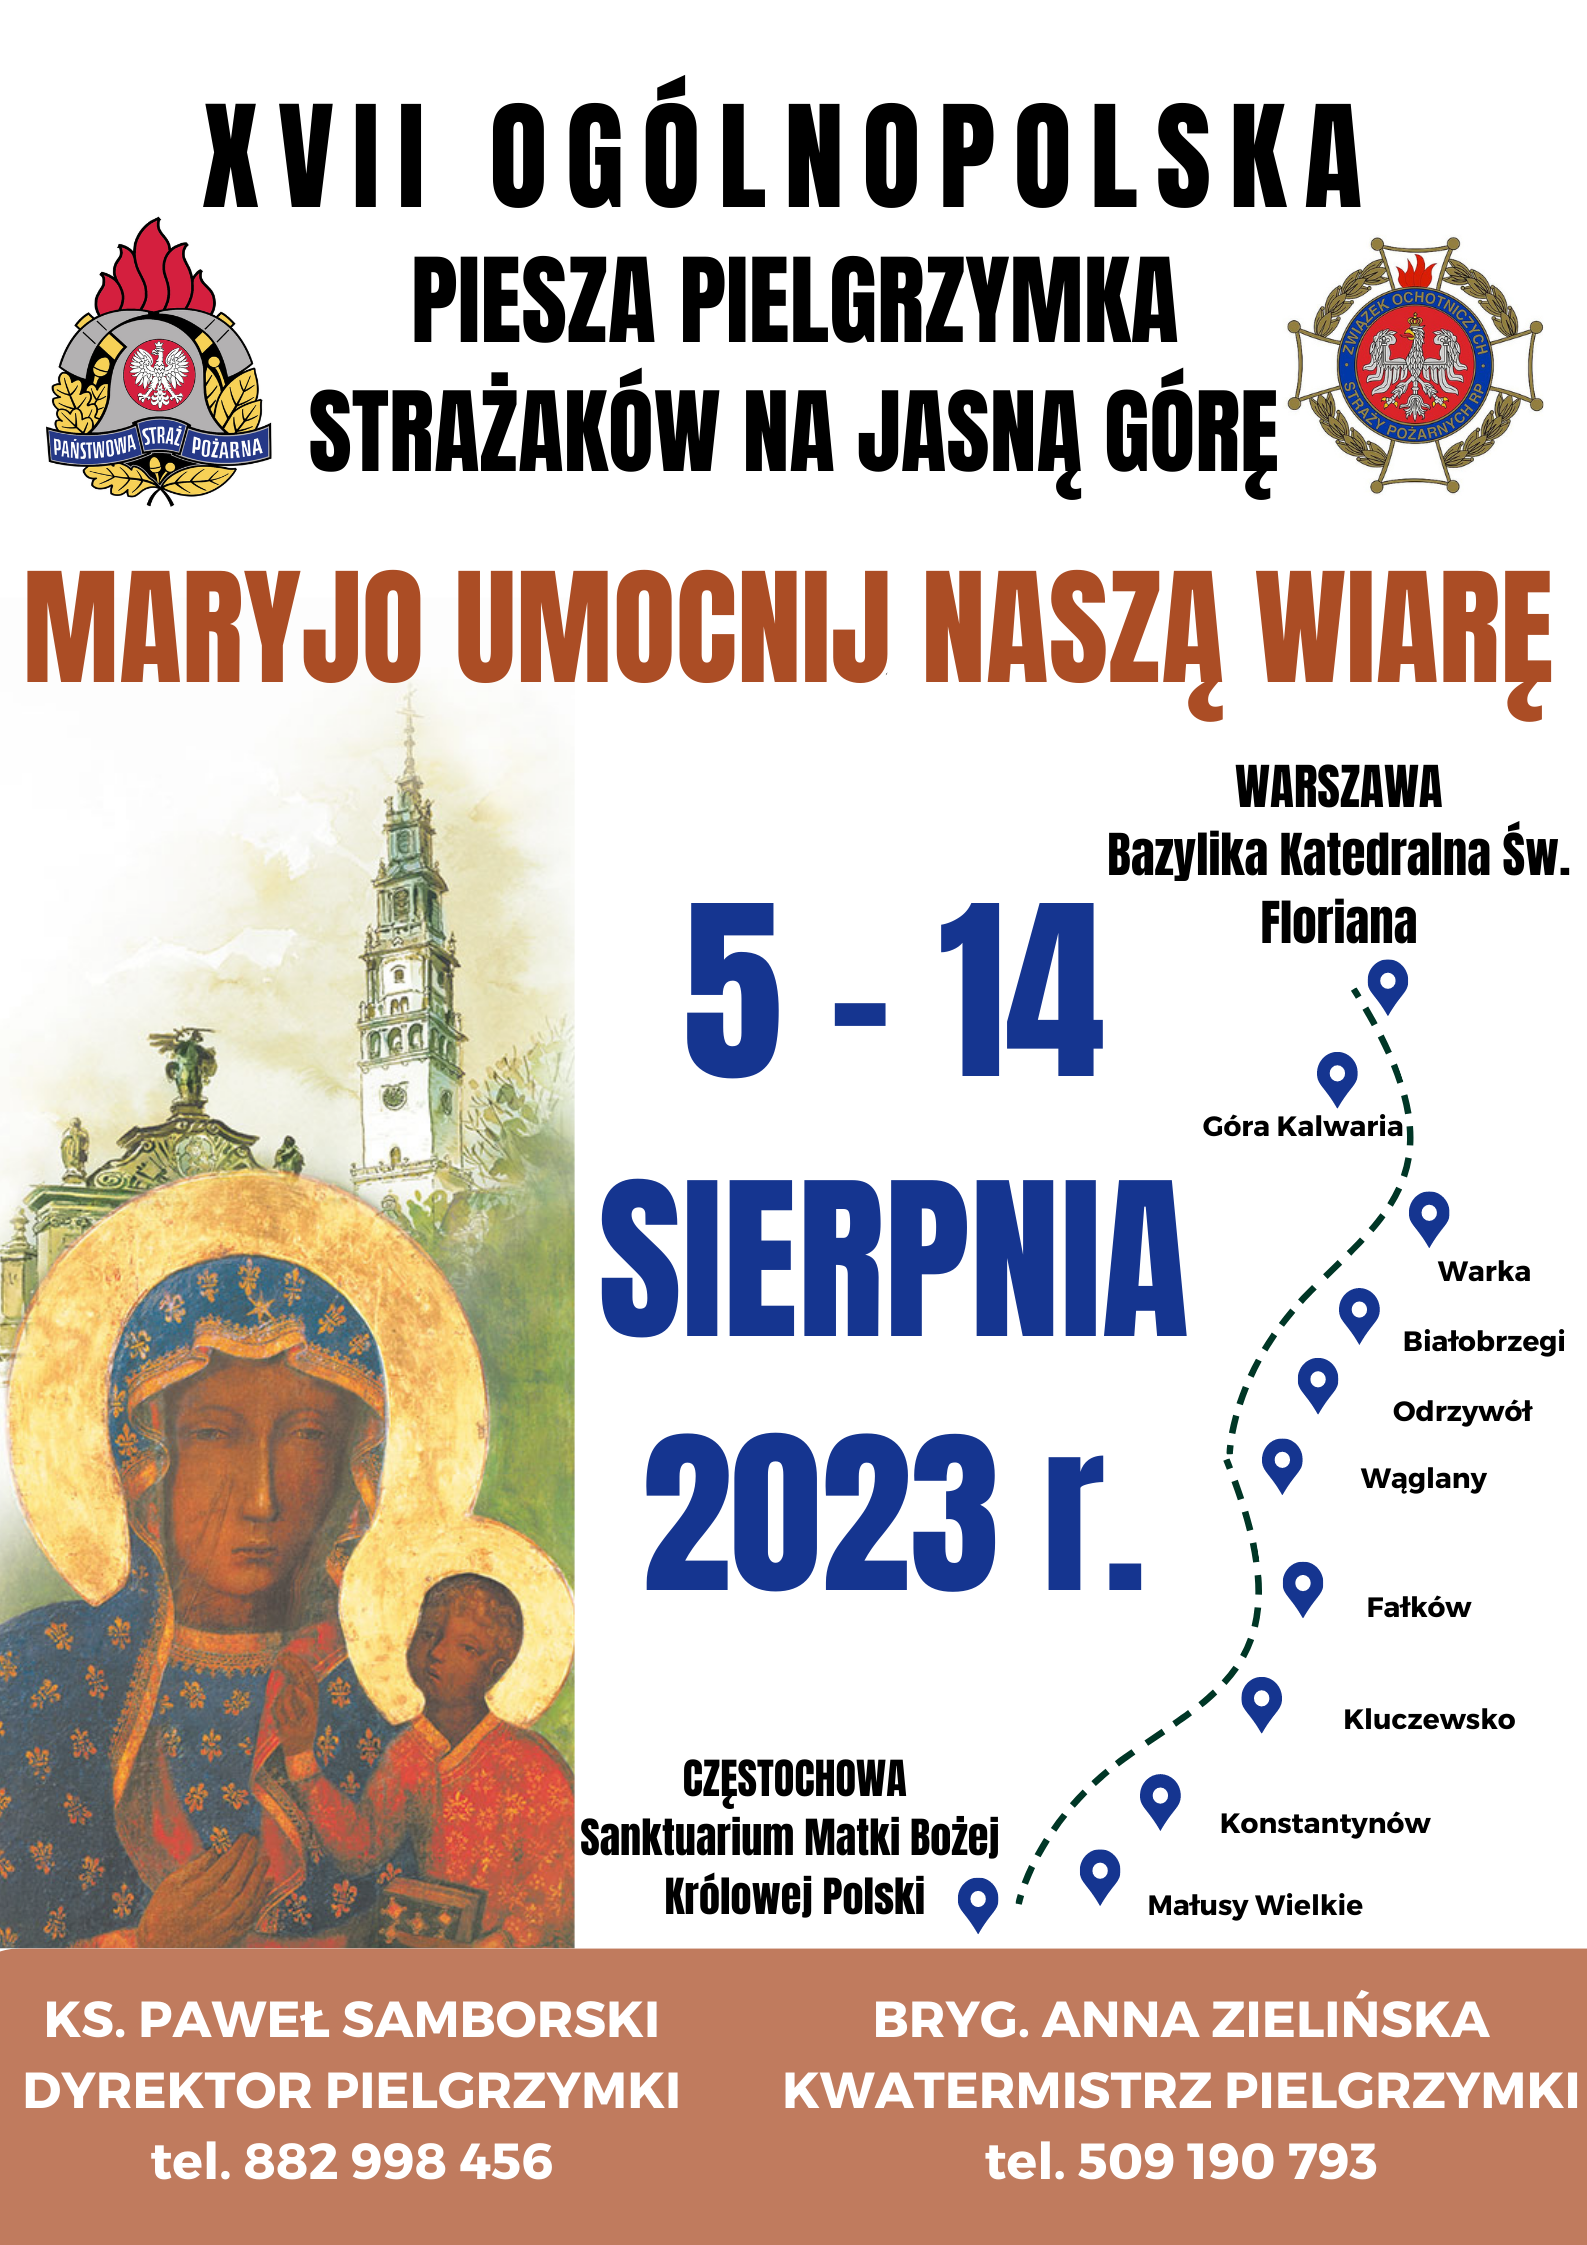 Plakat przedstawia informację o ogólnopolskiej pieszej pielgrzymce strażaków na Jasną Górę, która odbędzie się w dniach 5-14 sierpnia 2023 r. Na plakacie jest informacja o trasie pielgrzymki oraz o tym kto jest odpowiedzialny za zapisy.